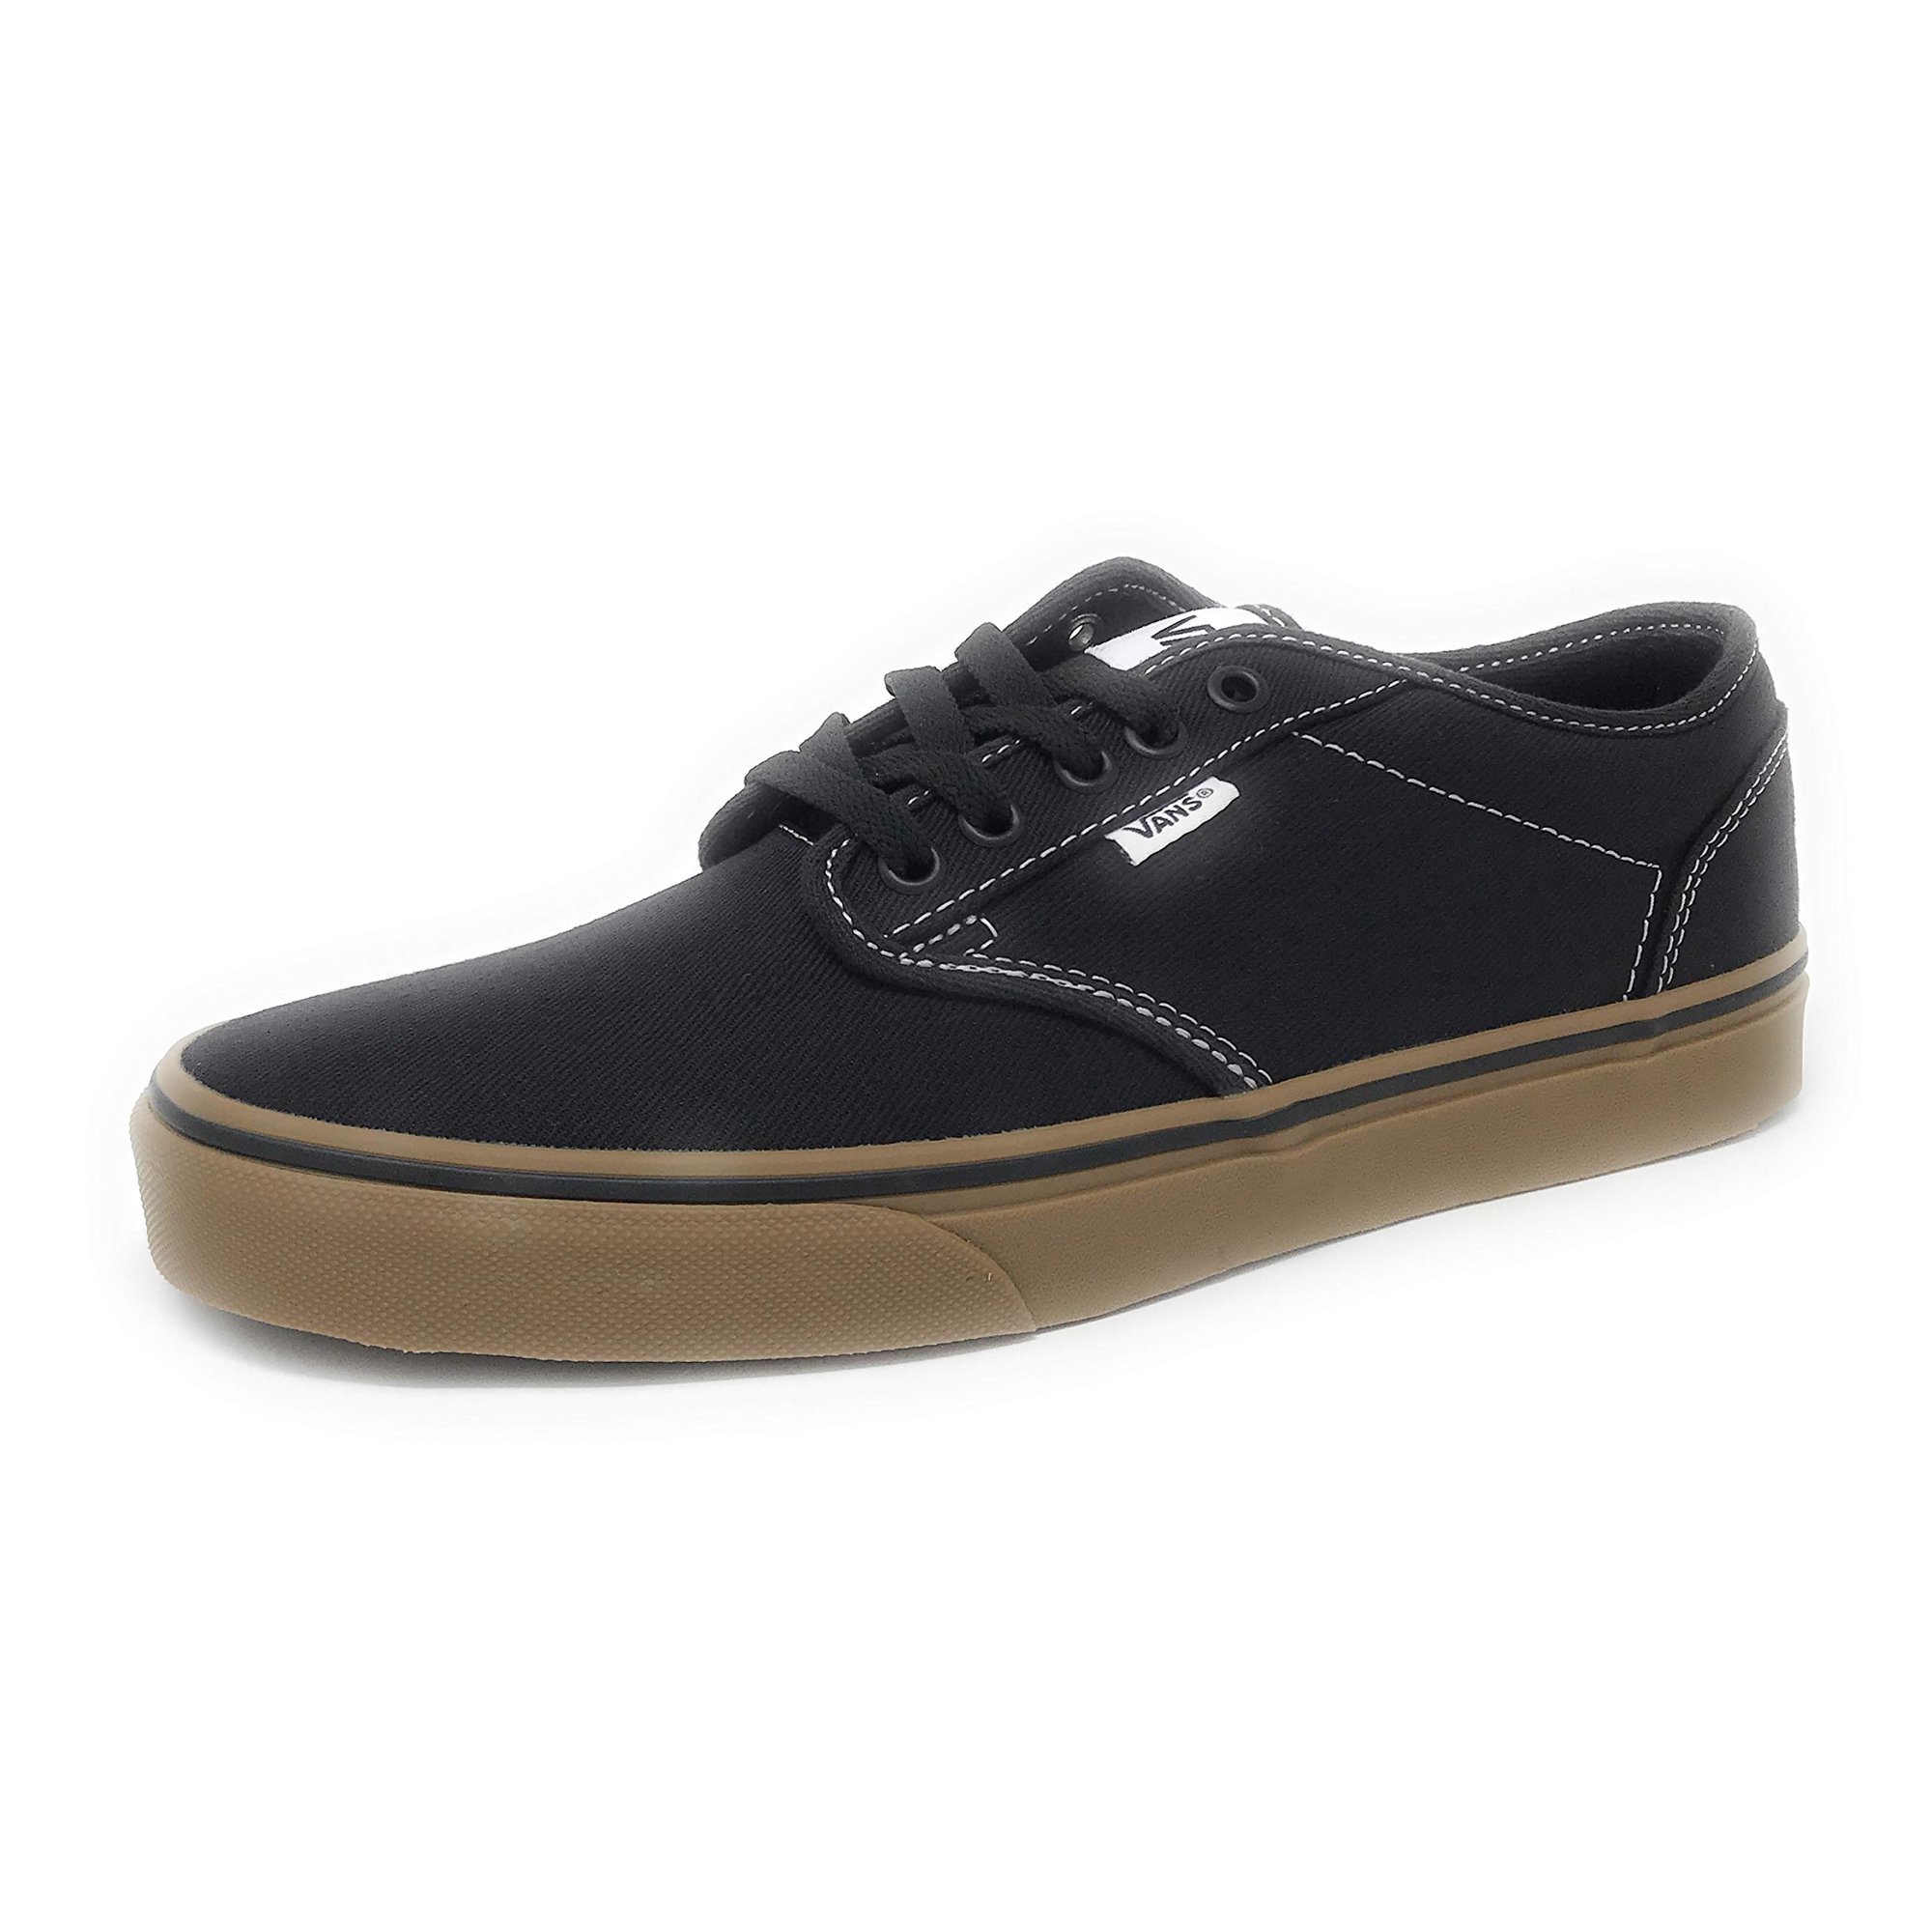 VANS Mens Atwood Canvas Skate Shoes - Size: 8.5, Black/gum | Walmart